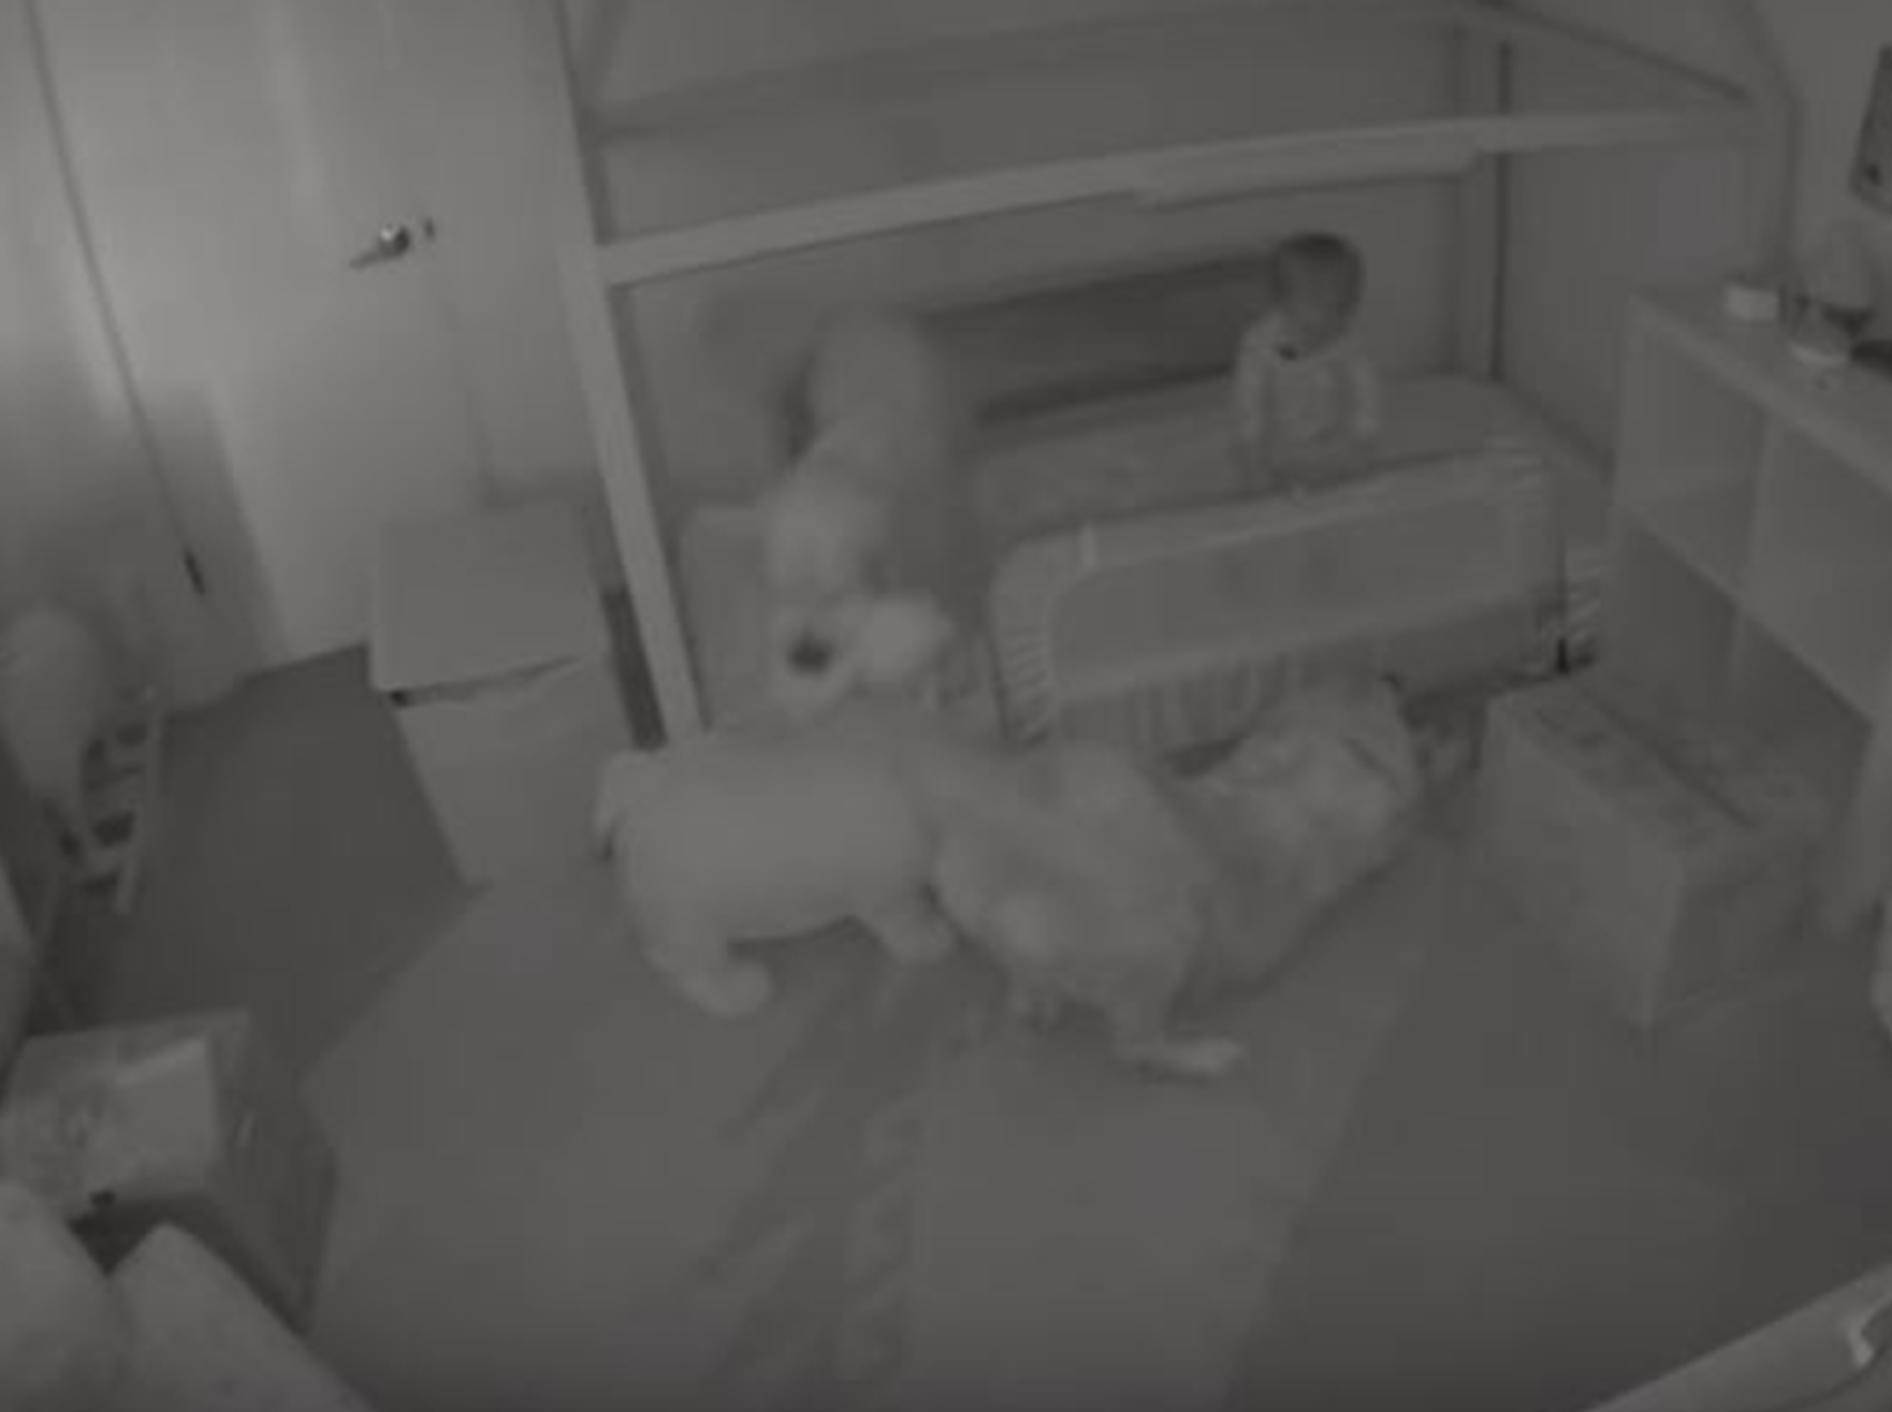 Labradore befreien Kleinkind aus seinem Zimmer - Bild: YouTube / Daily Mail